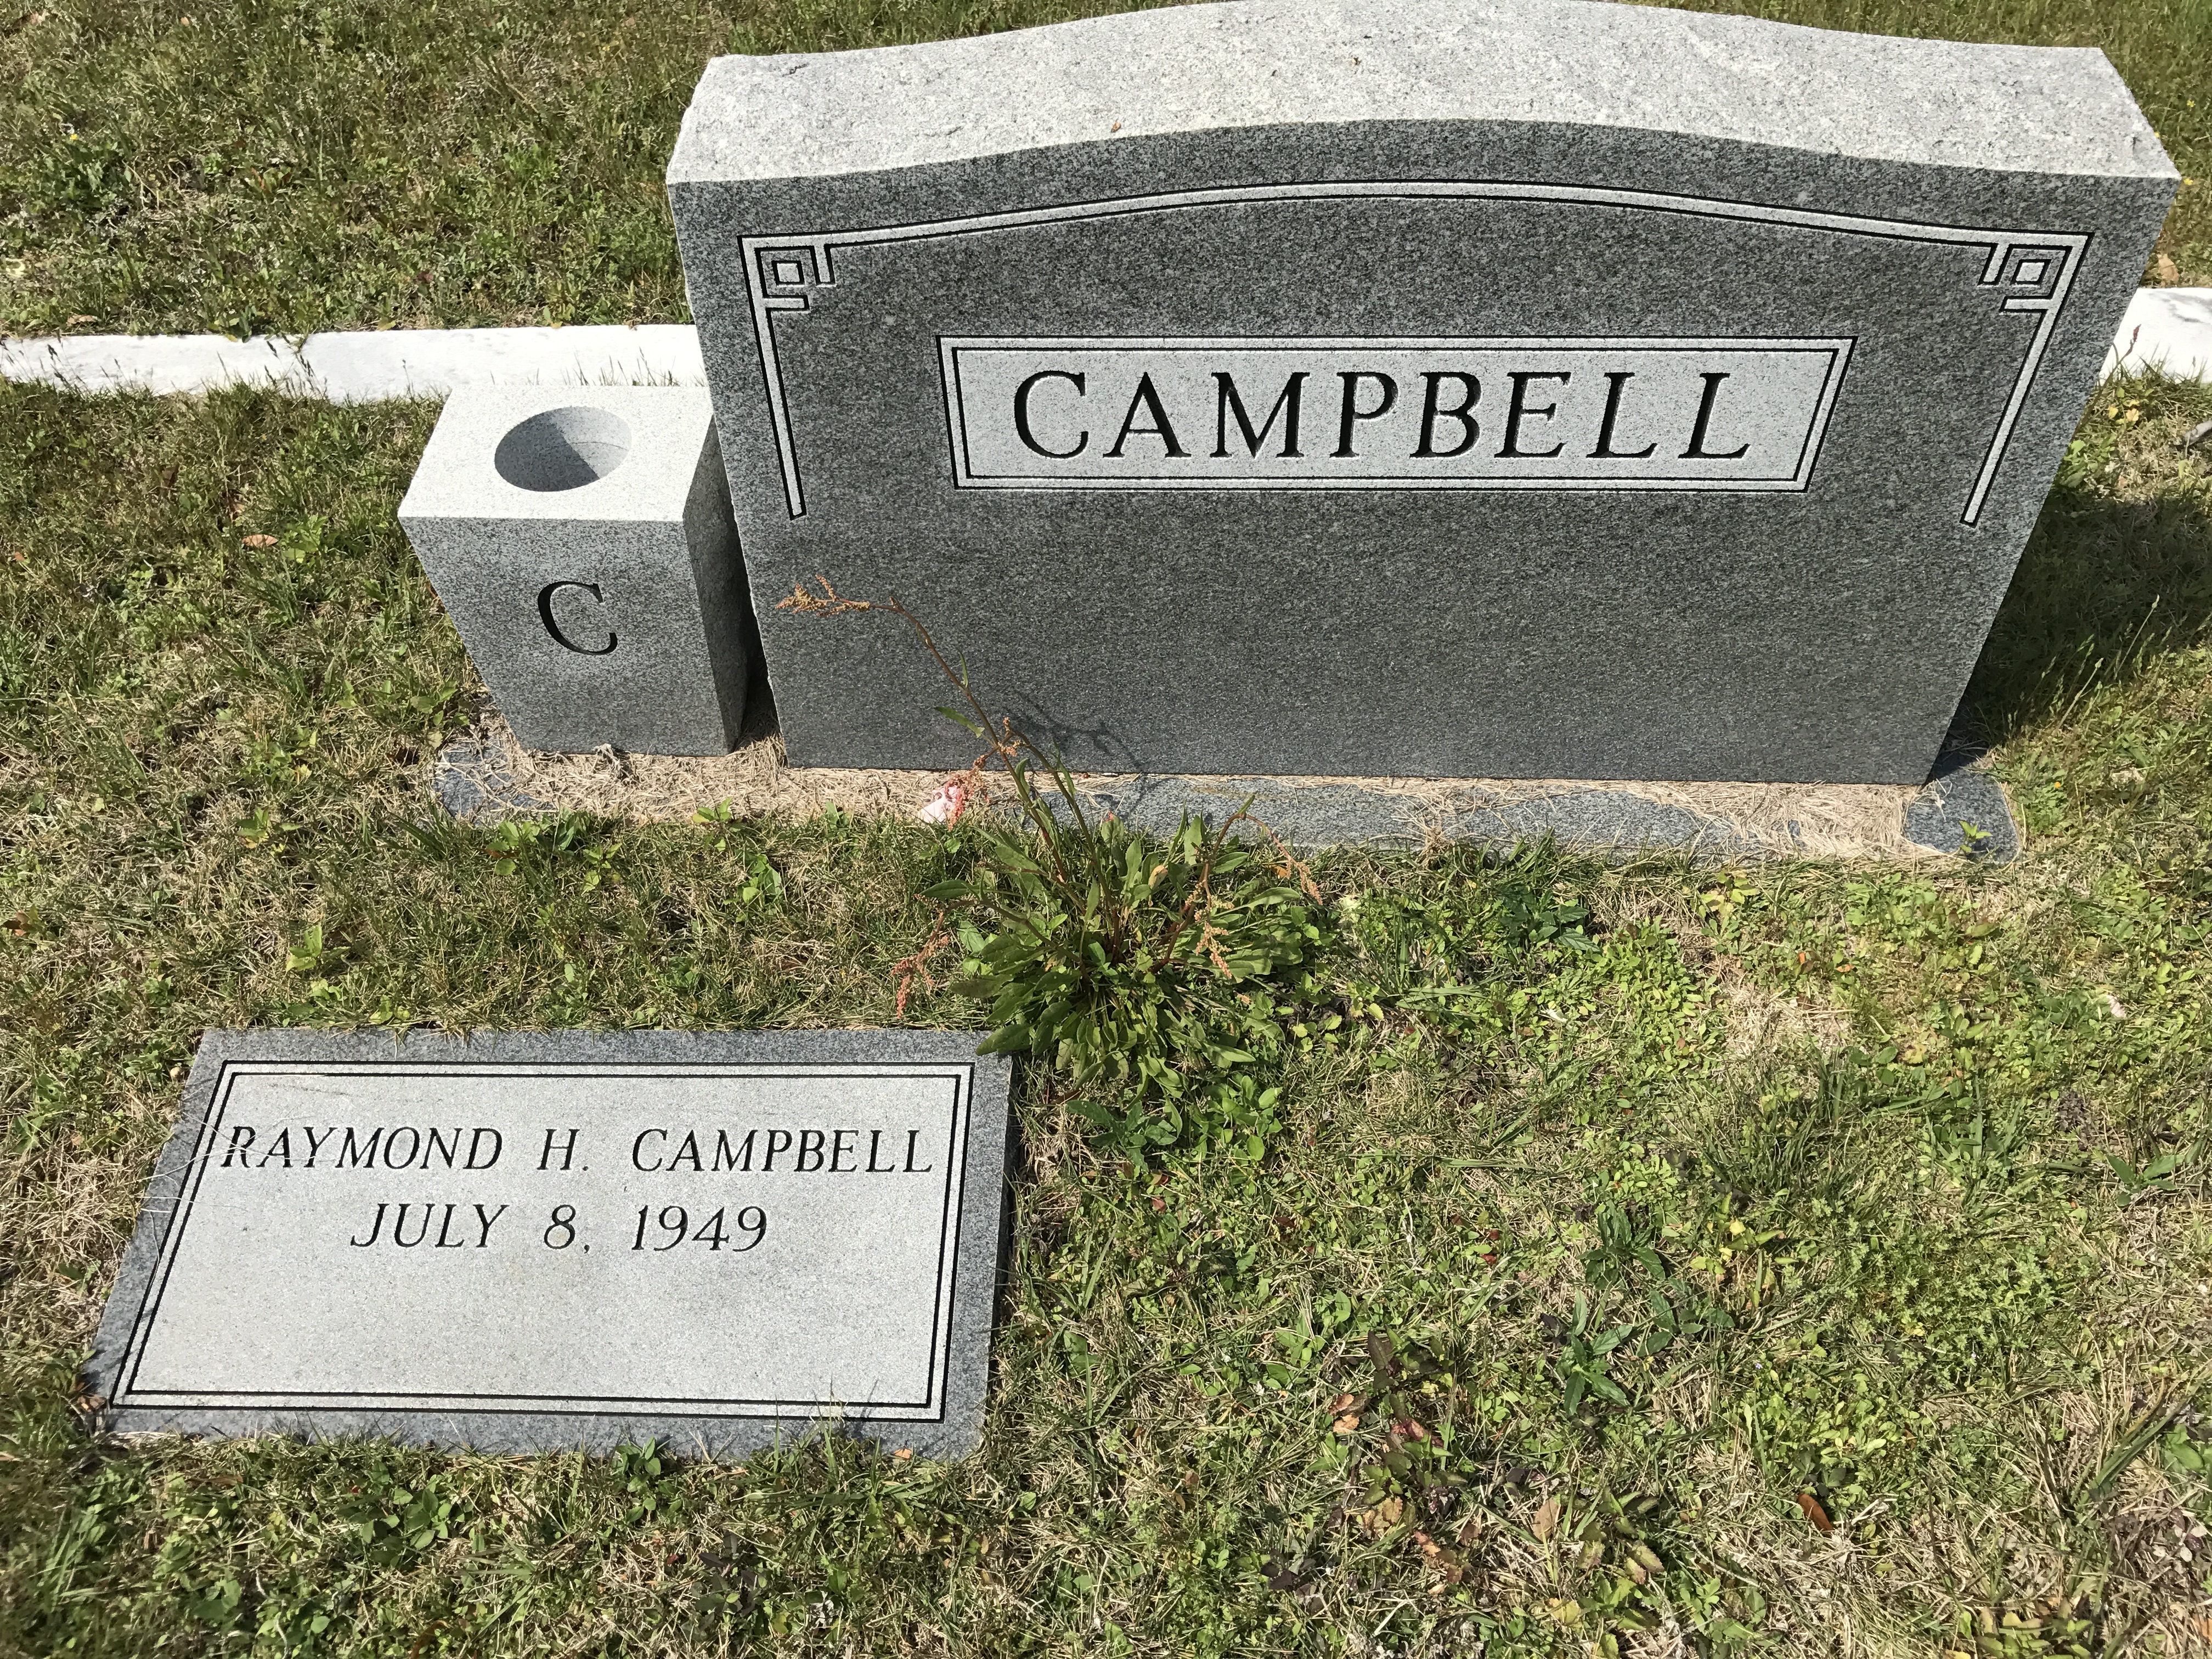 Raymond H. Campbell